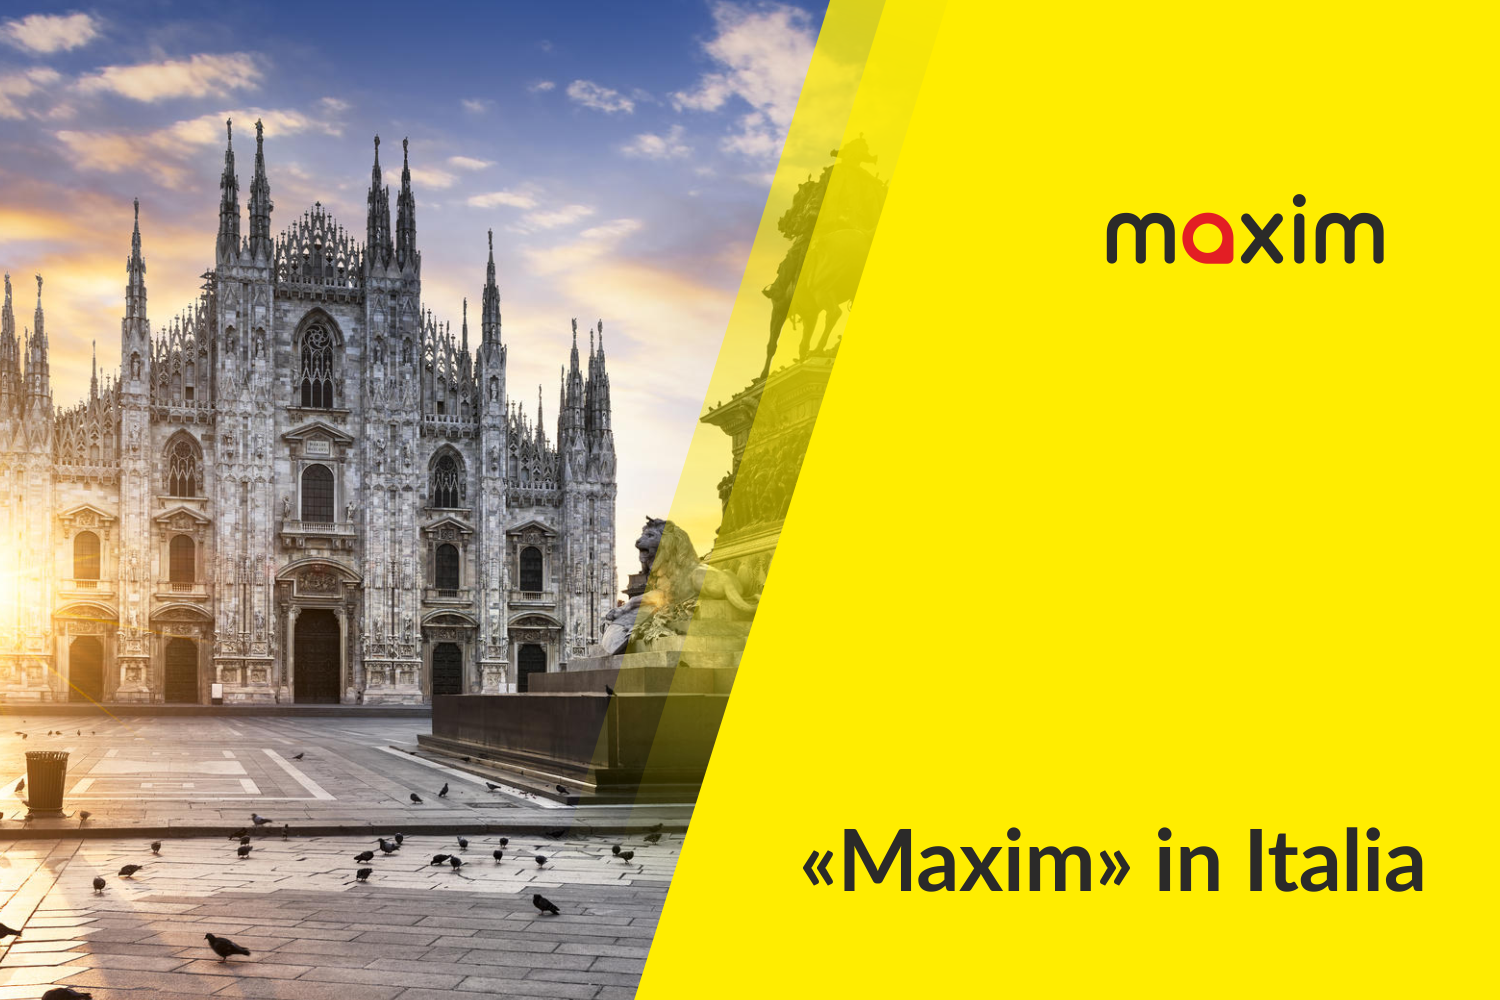 La compagnia di prenotazione taxi "Maxim" ha proposto un nuovo servizio in Italia: il transfer- il servizio di trasferimenti